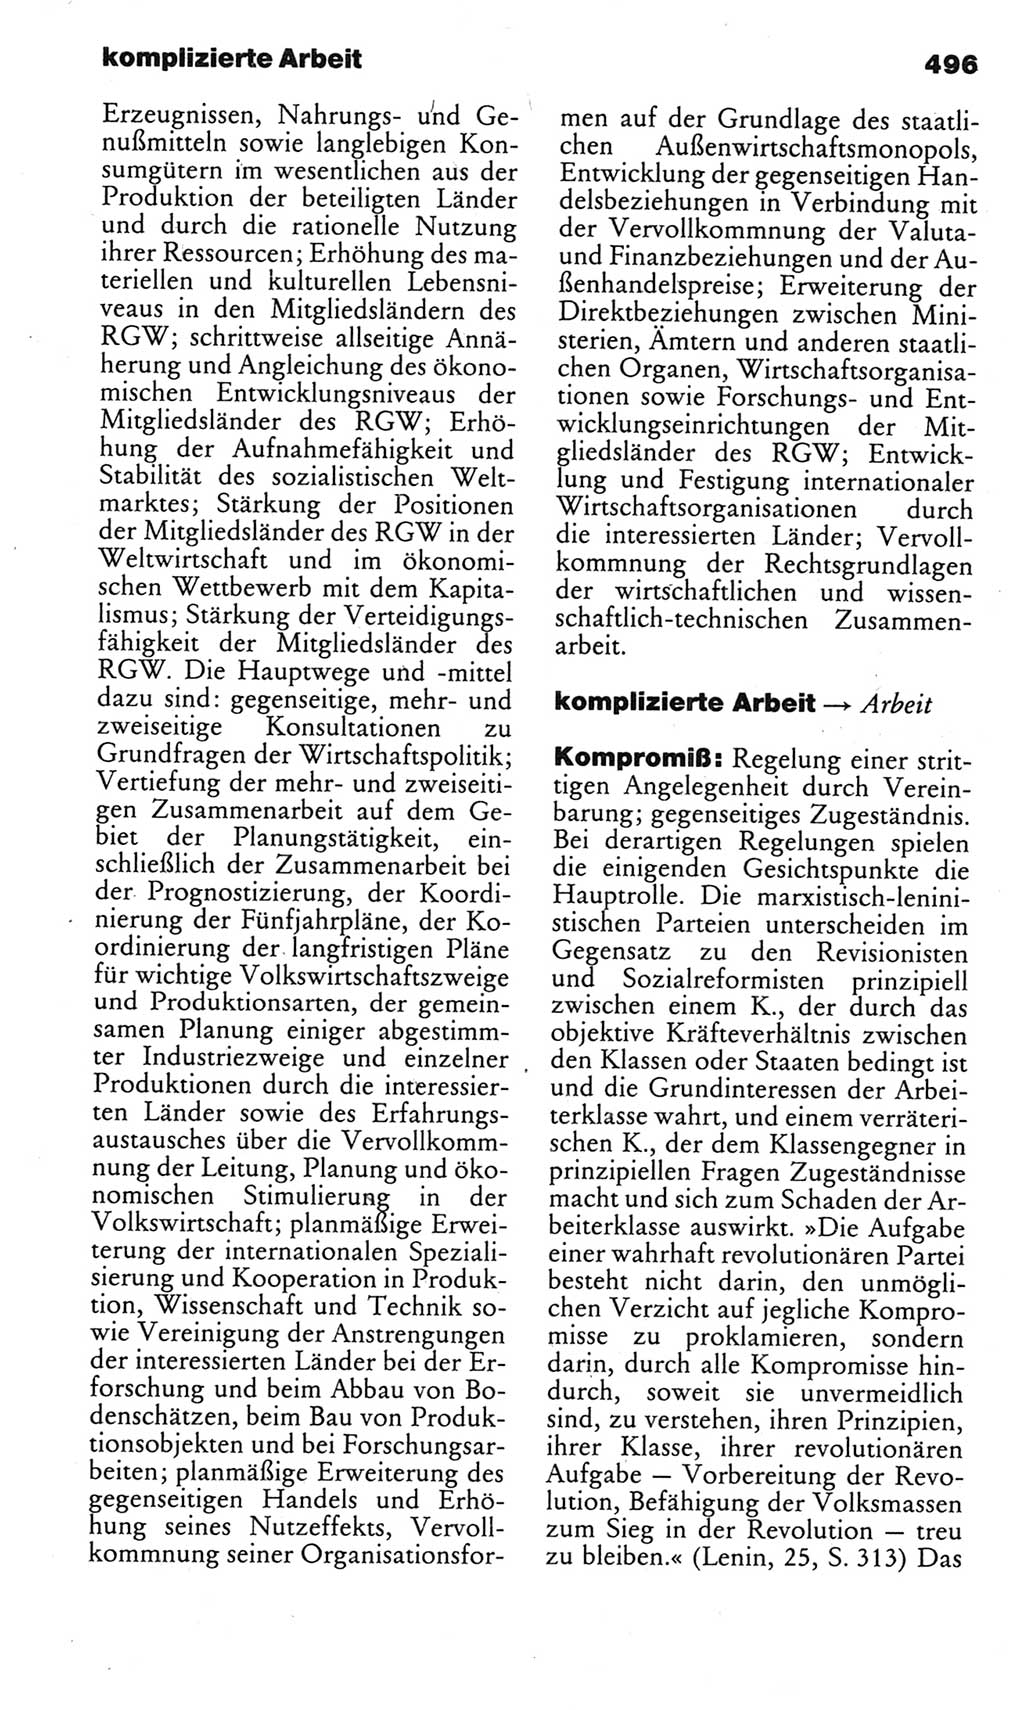 Kleines politisches Wörterbuch [Deutsche Demokratische Republik (DDR)] 1983, Seite 496 (Kl. pol. Wb. DDR 1983, S. 496)